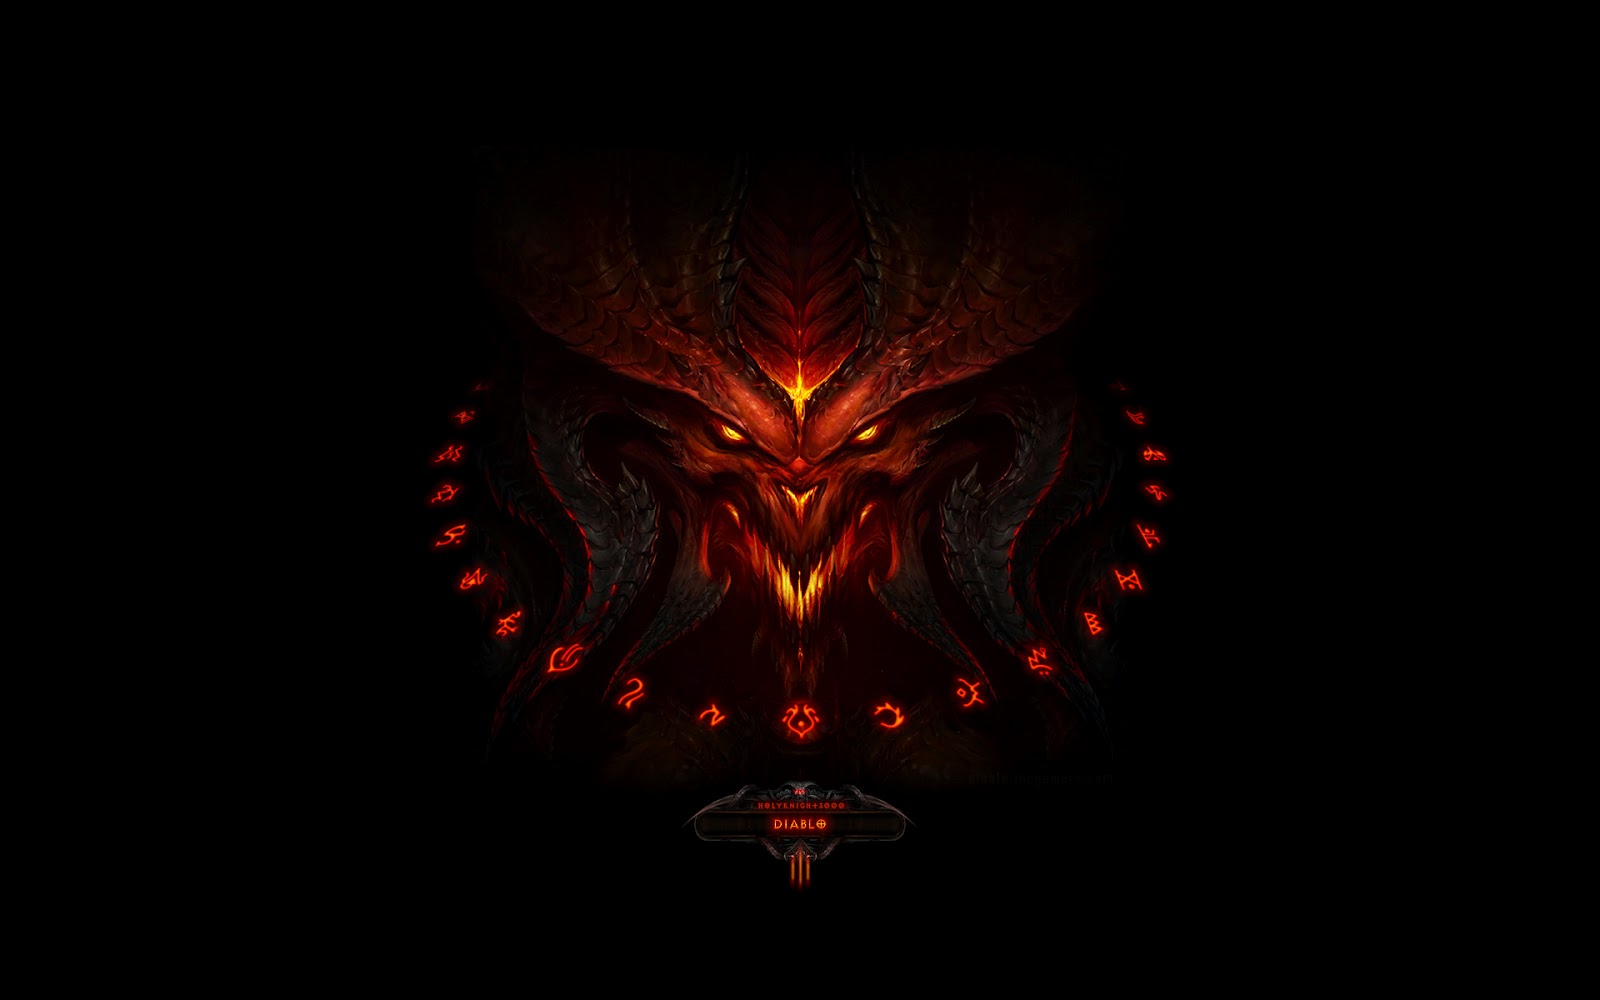 Diablo Wallpaper In Full HD 1080p Store For Desktop